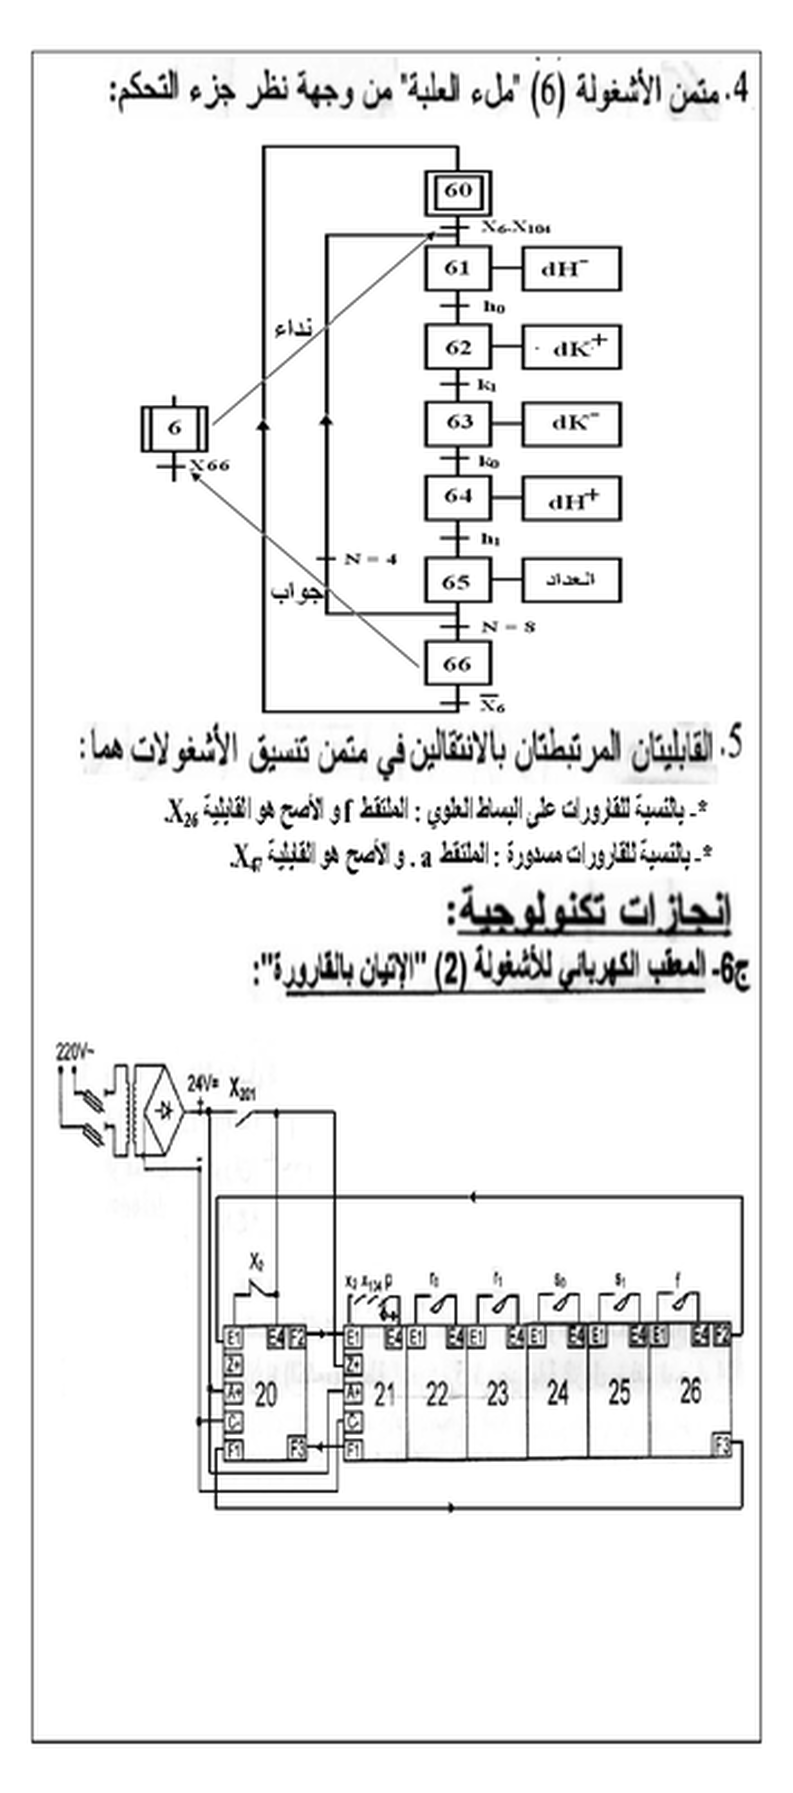 تصحيح مقترح لموضوع الهندسة الكهربائية بكالوريا 2012 5503387